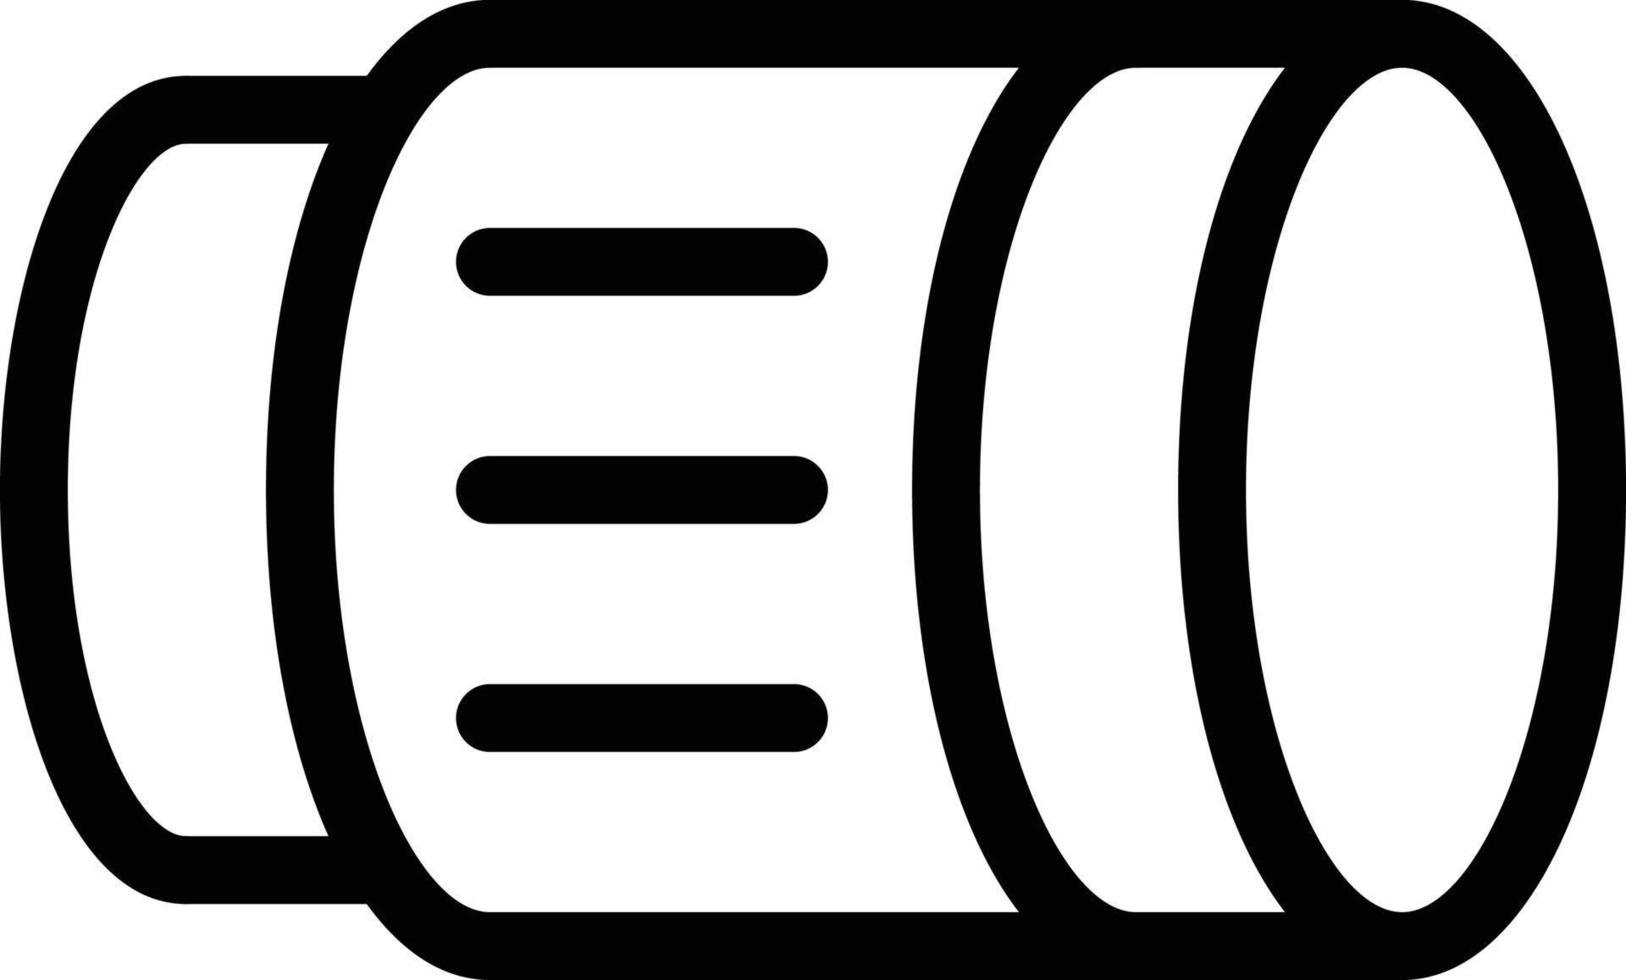 illustrazione vettoriale dell'obiettivo della fotocamera su uno sfondo. simboli di qualità premium. icone vettoriali per il concetto e la progettazione grafica.